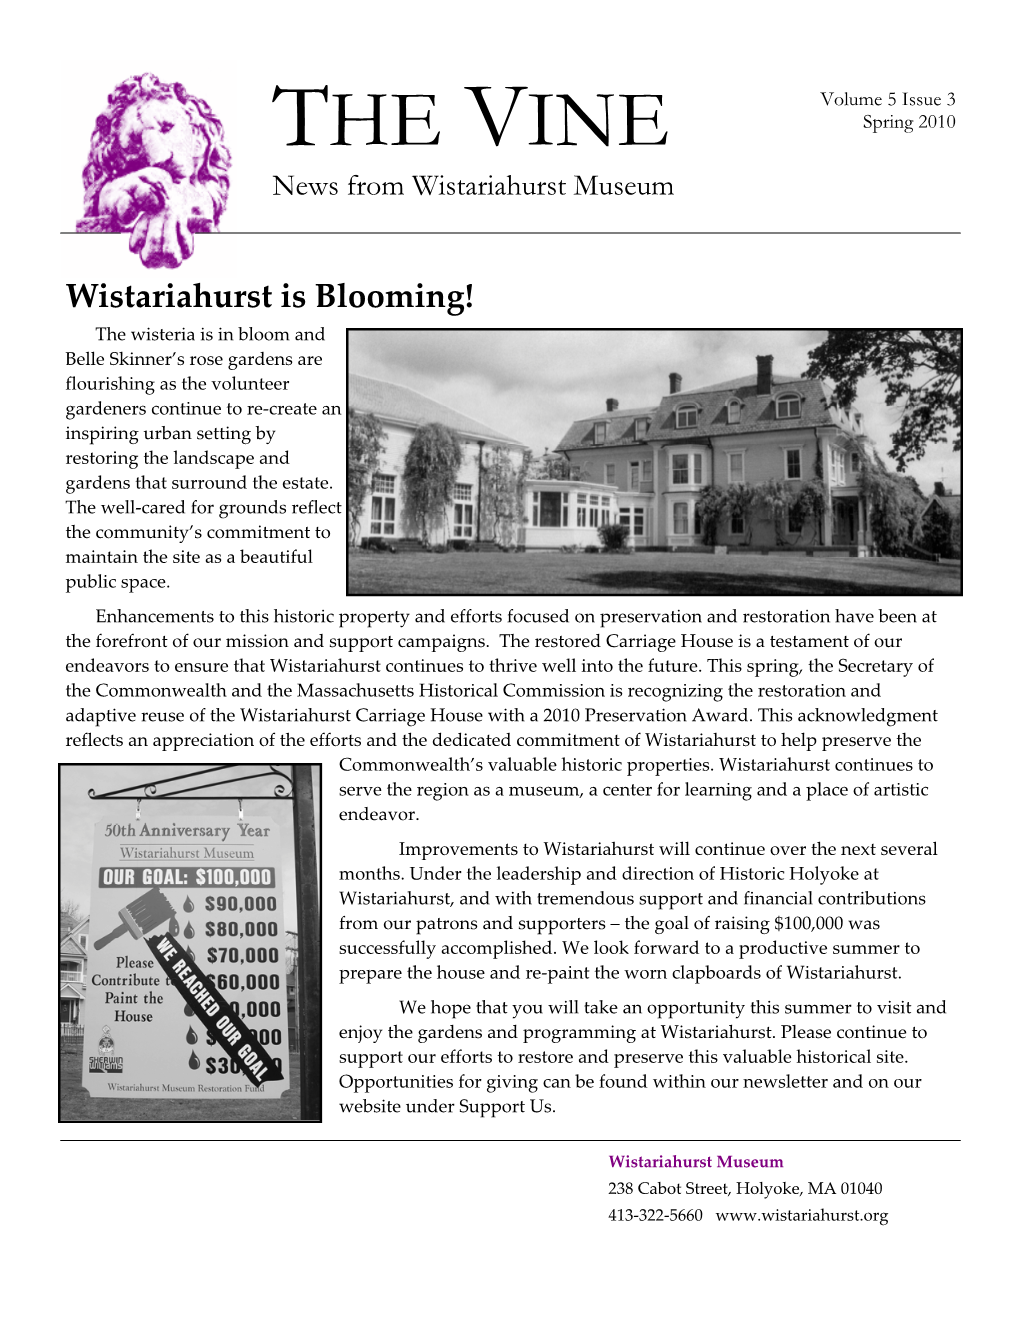 THE VINE News from Wistariahurst Museum